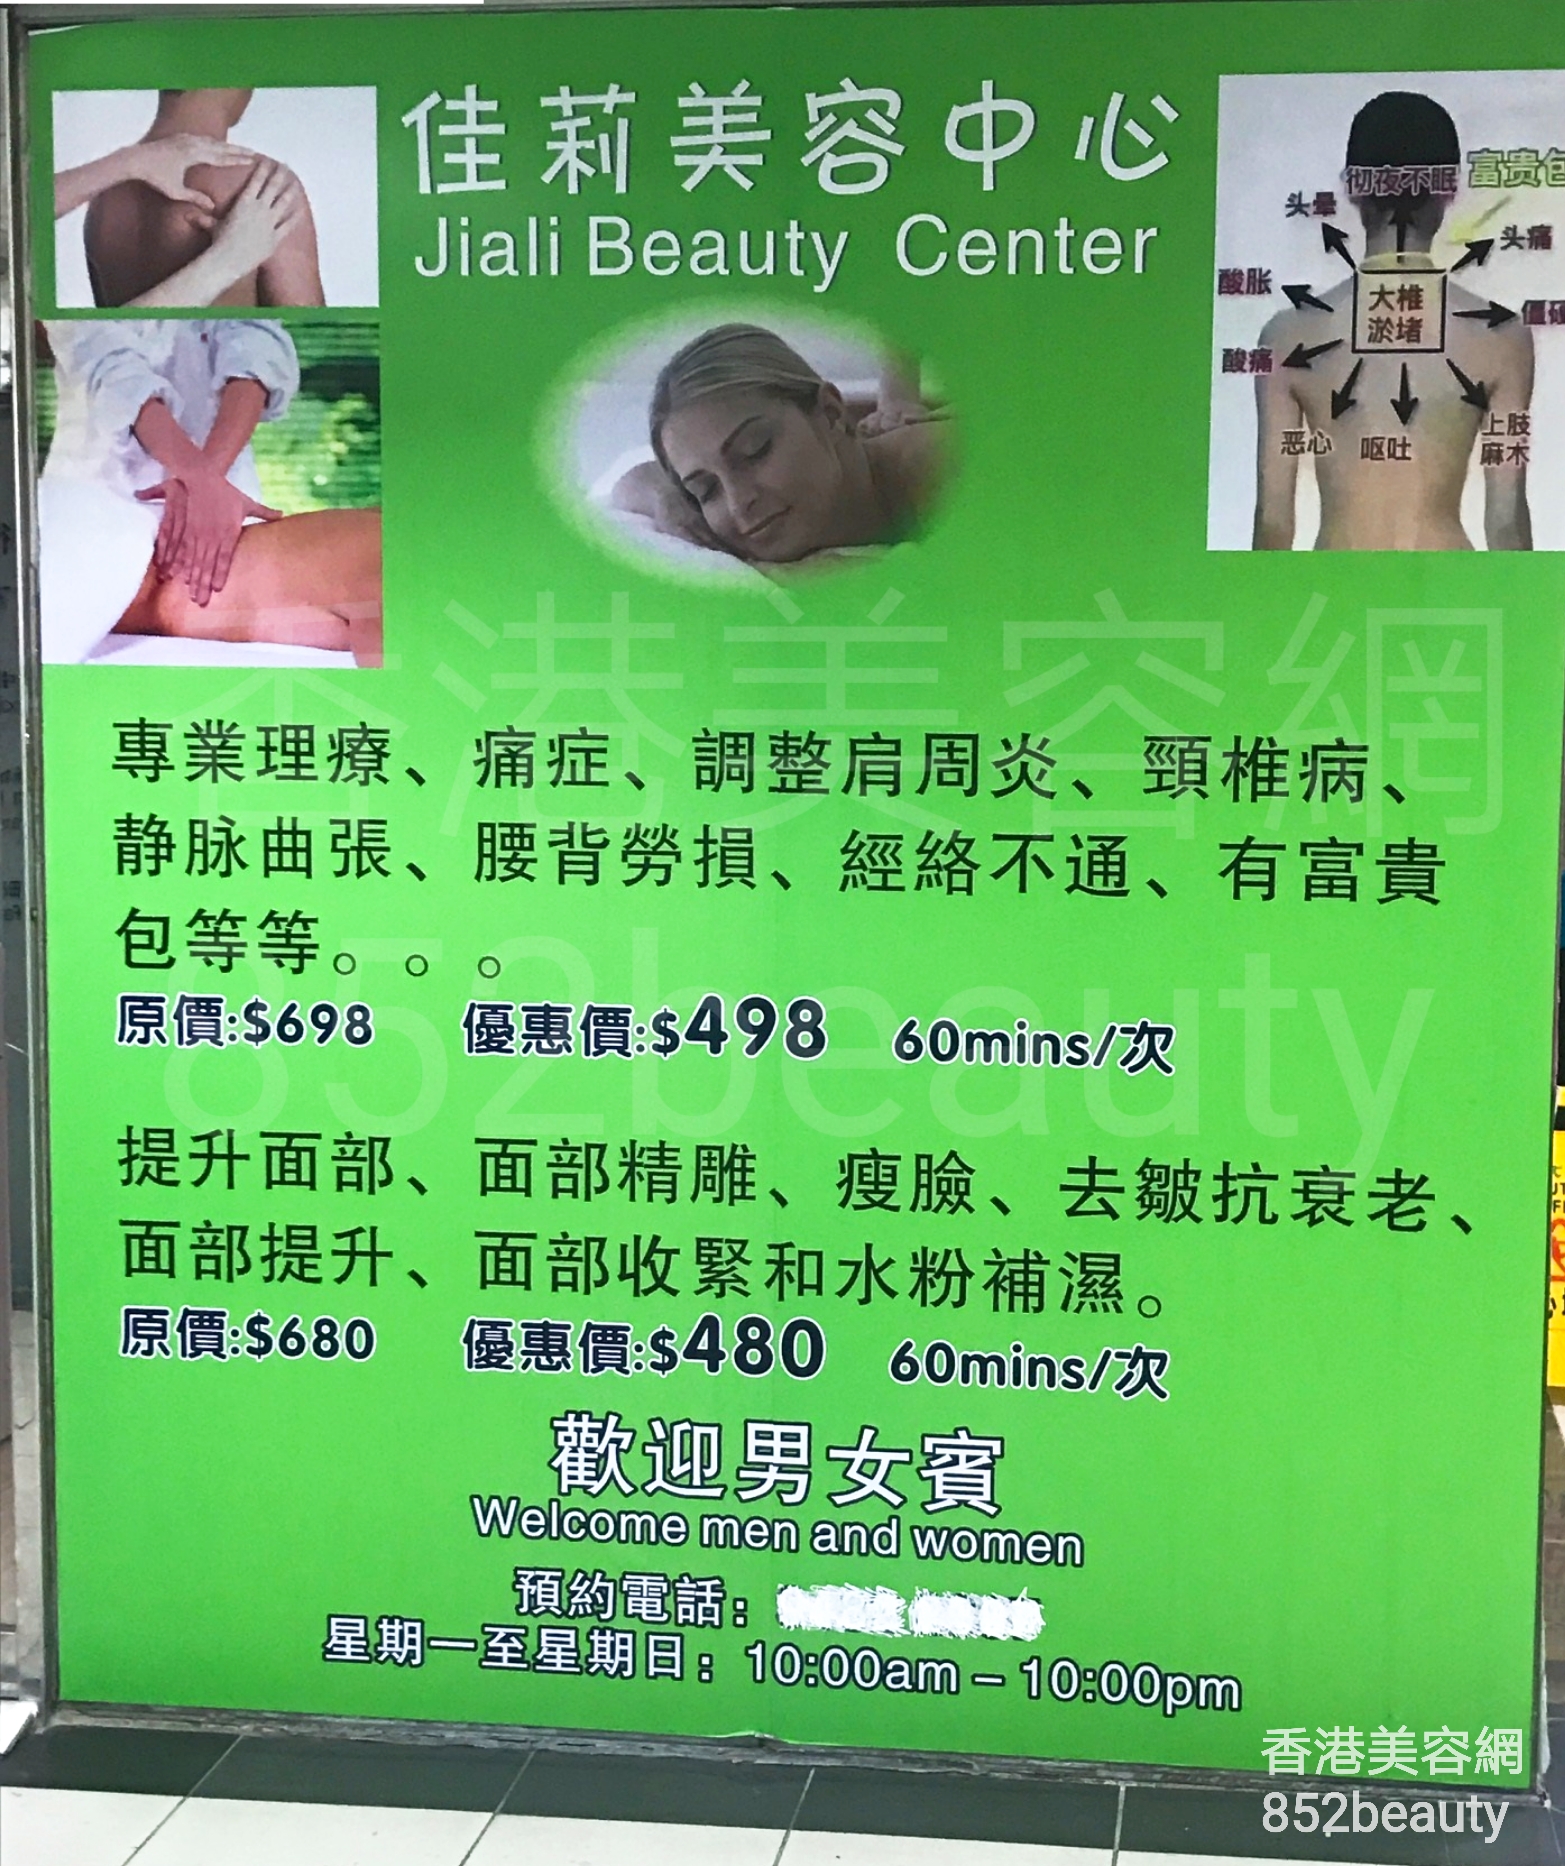 Massage/SPA: 佳莉美容中心 Jiali Beauty Center